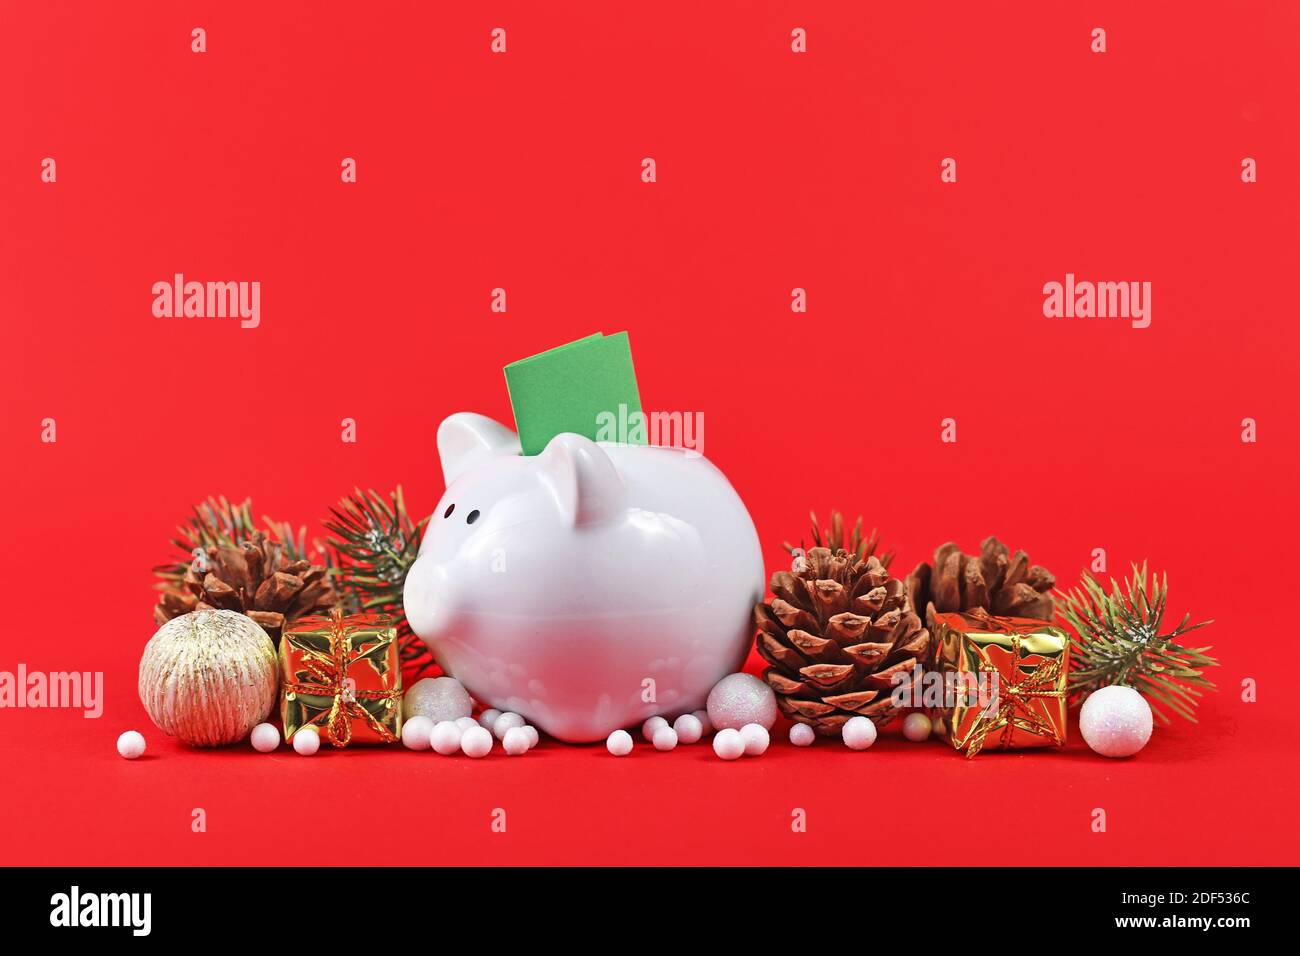 Weihnachtsarrangement mit Sparschwein mit grünem Gutschein umgeben von Saisonale Ornamente auf rotem Hintergrund Stockfoto